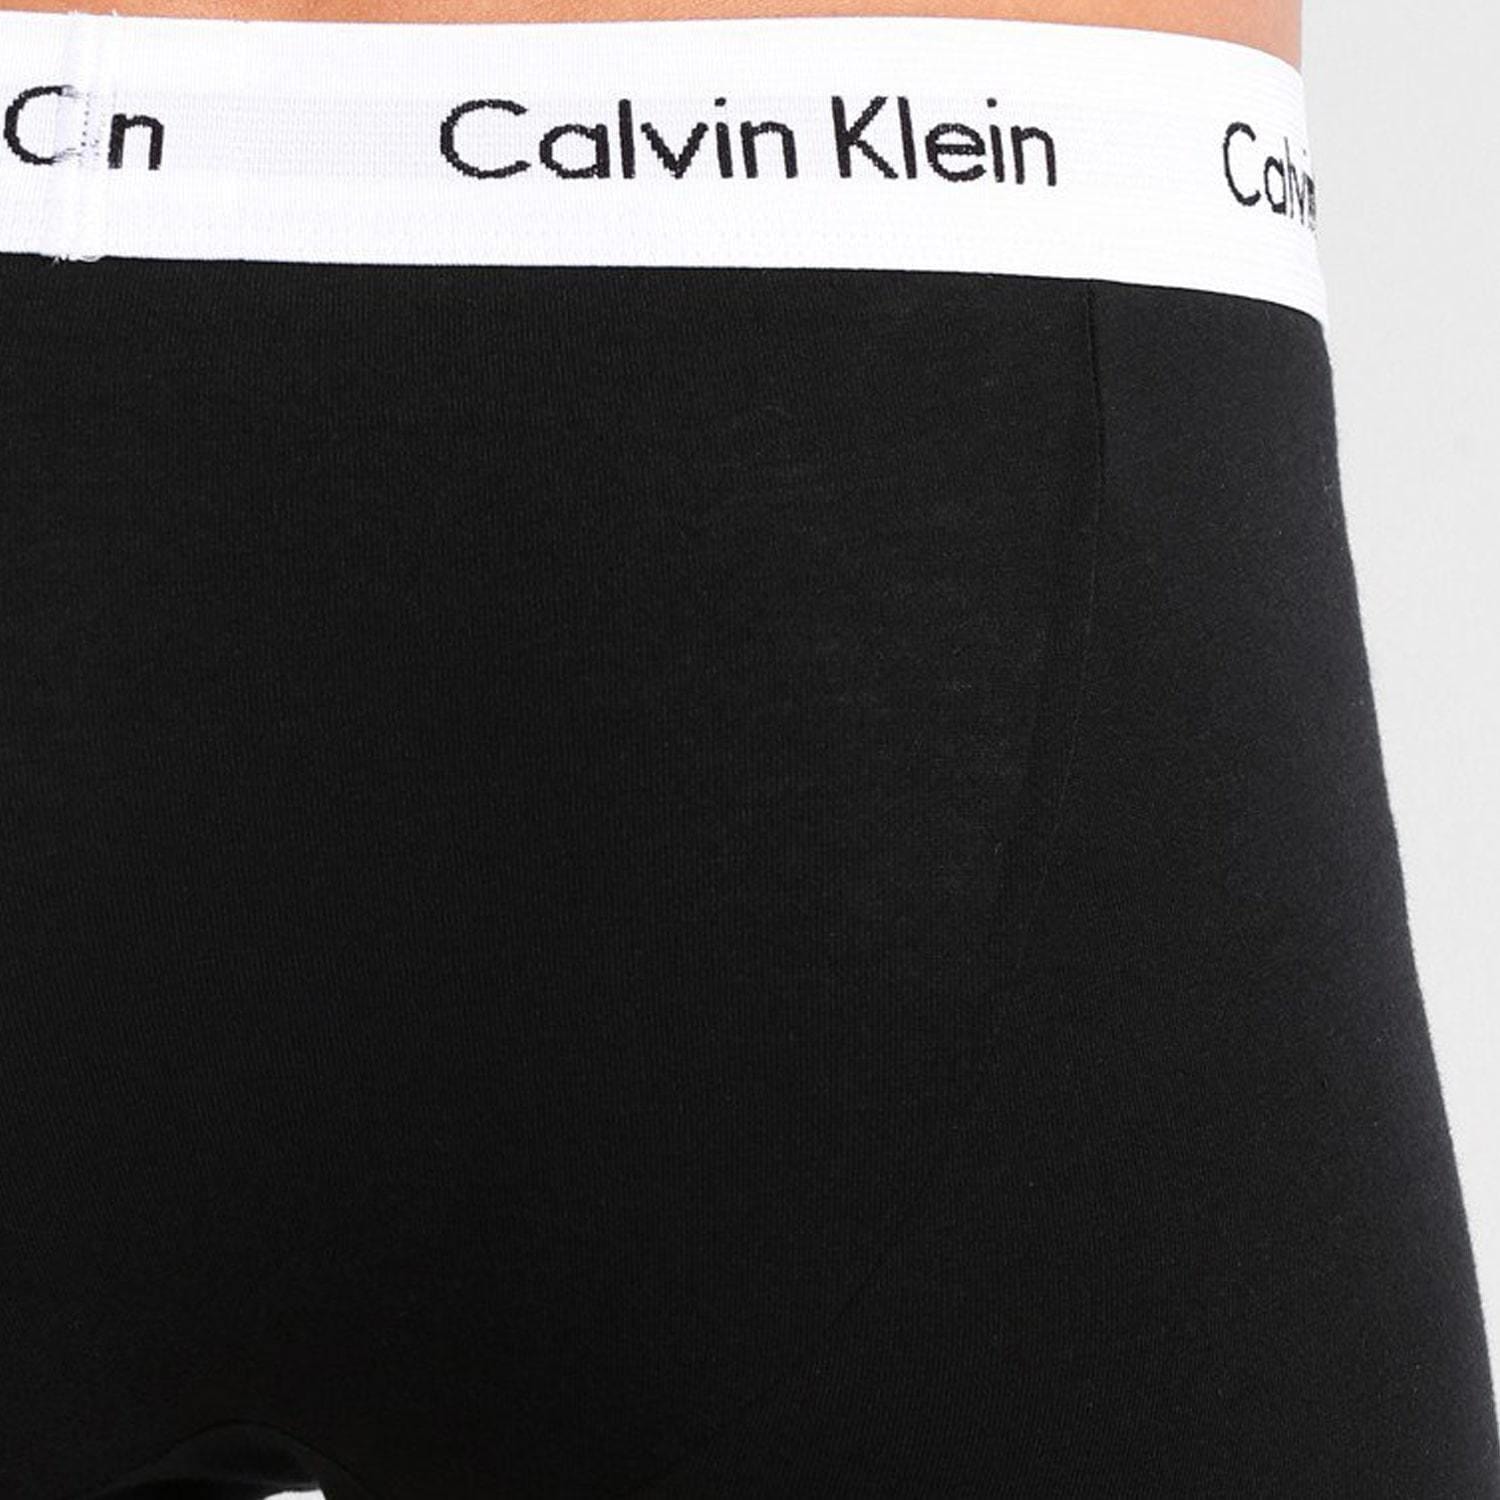 Calvin Klein 3-Pack Trunks (9 av 10)